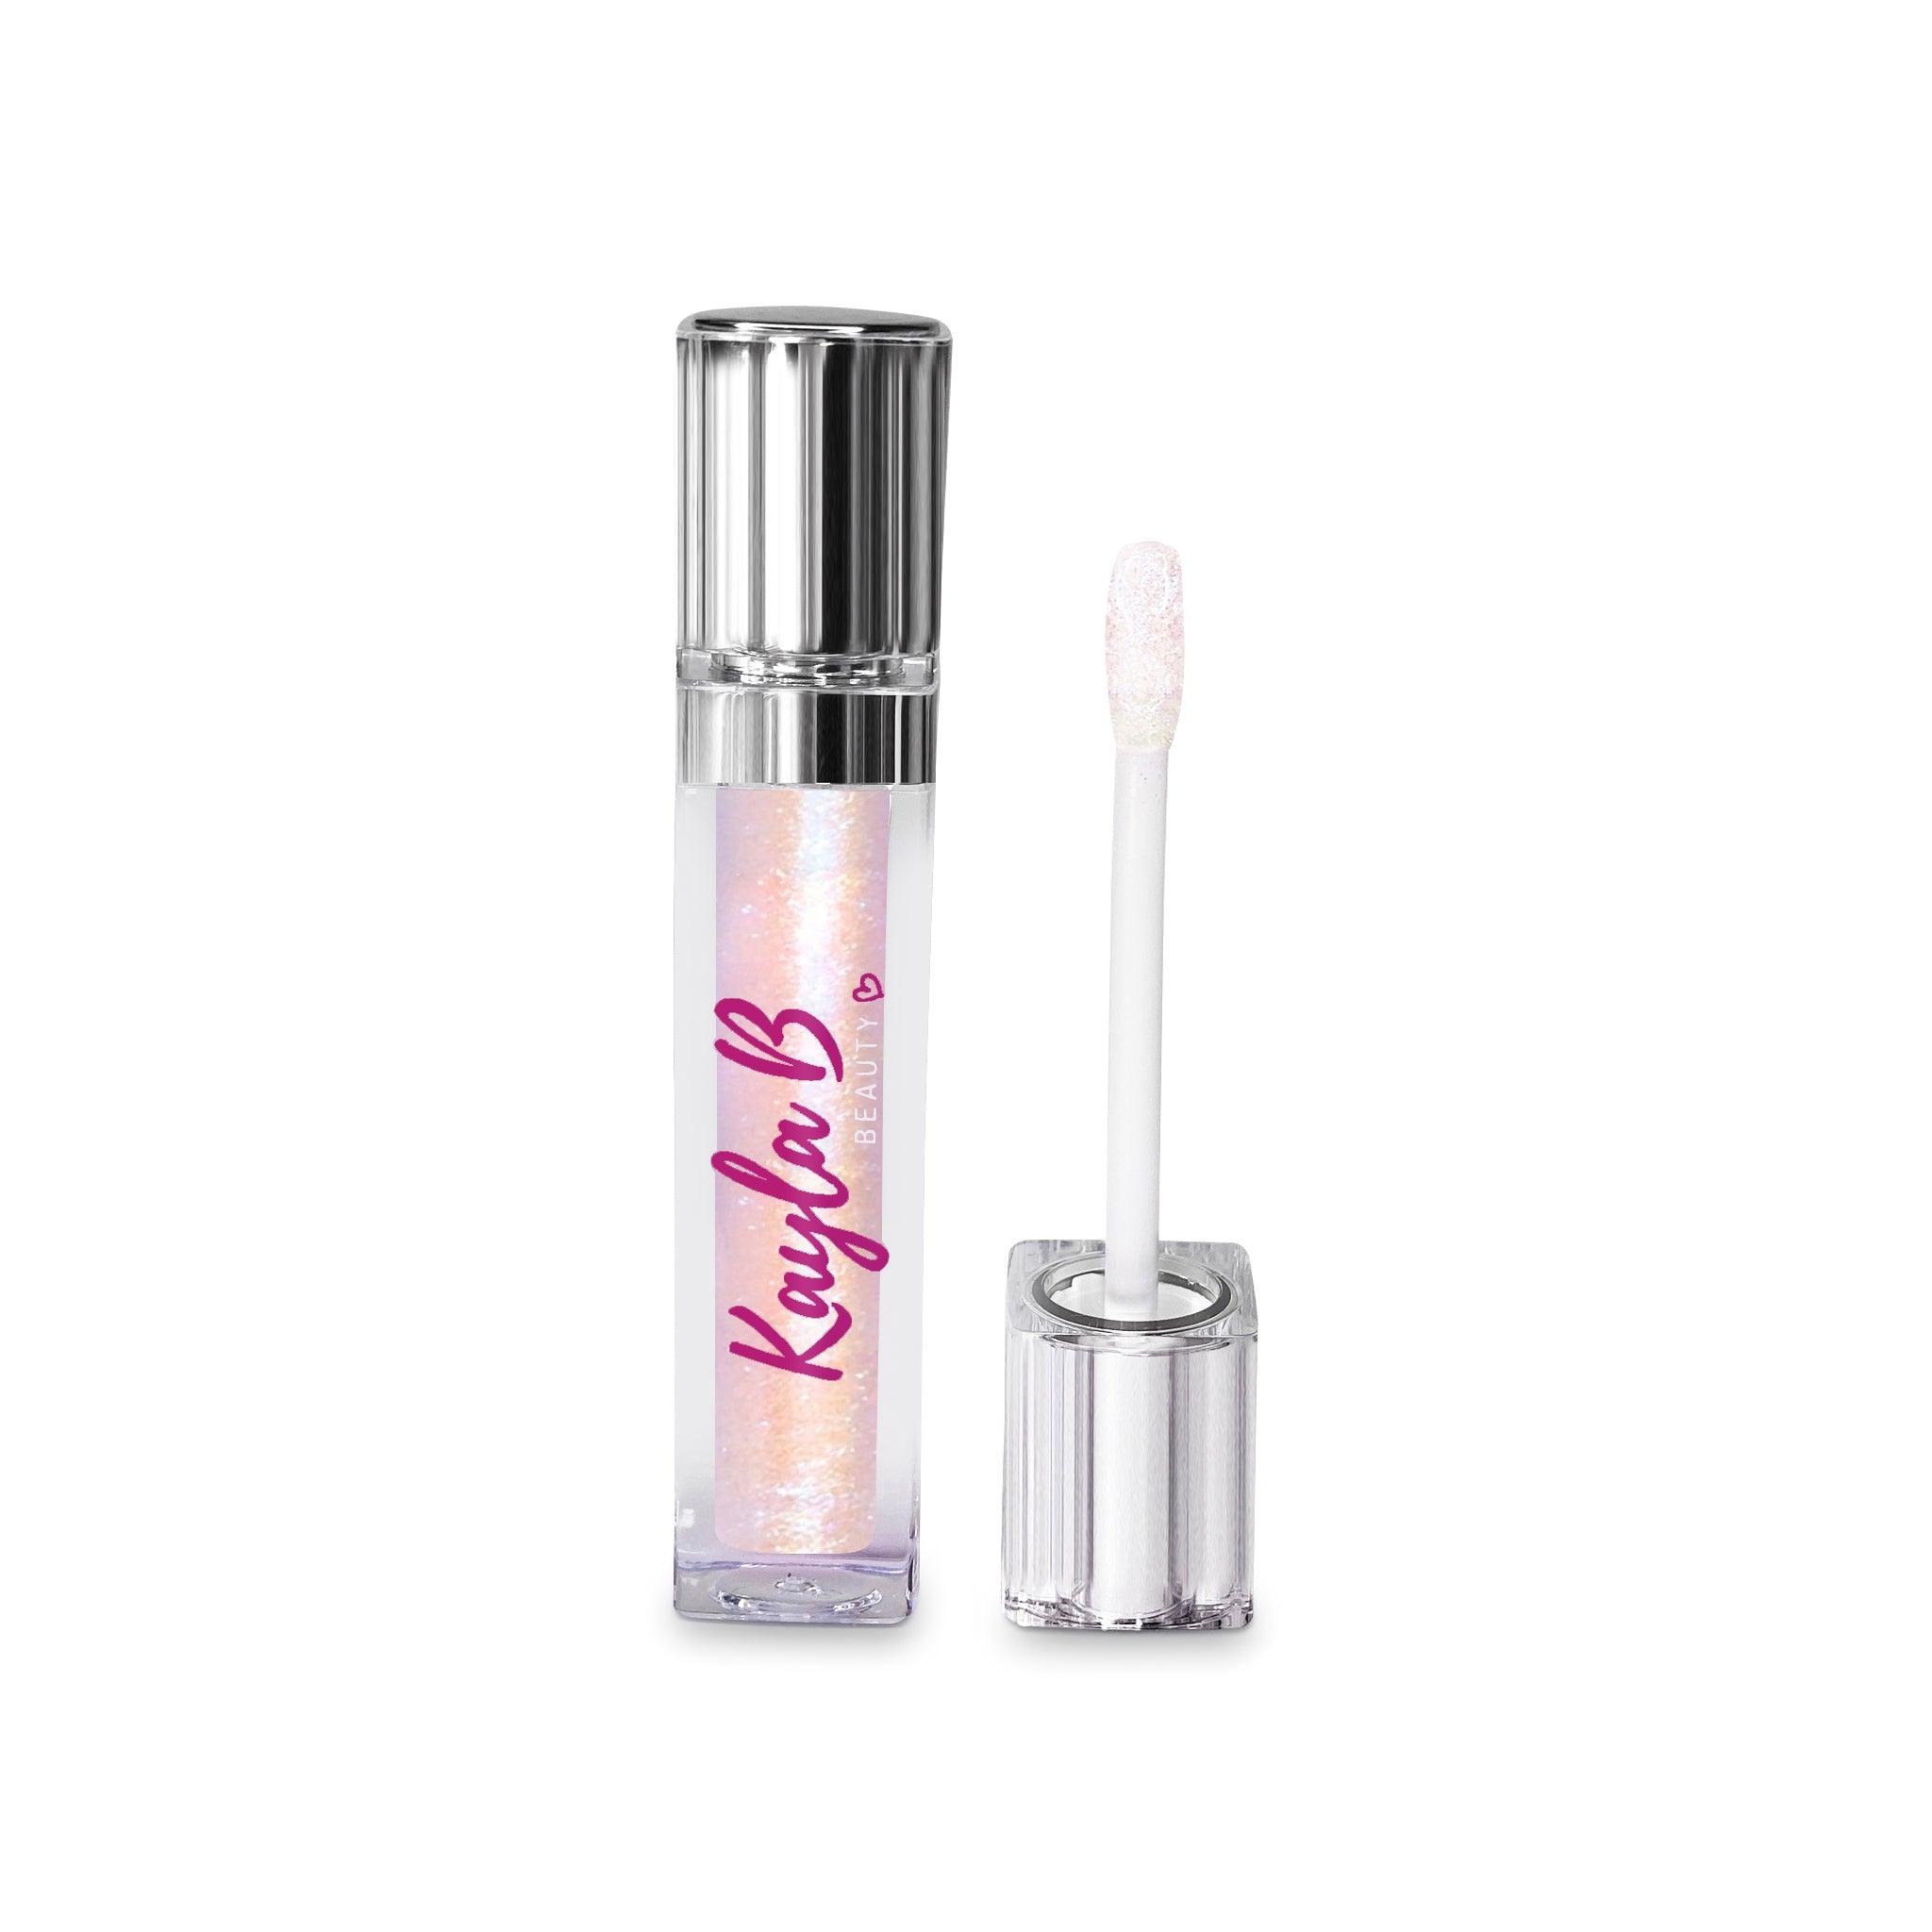 Frostbite - Kayla B Beauty - Flavored Lip Gloss, Glitter Lip Gloss